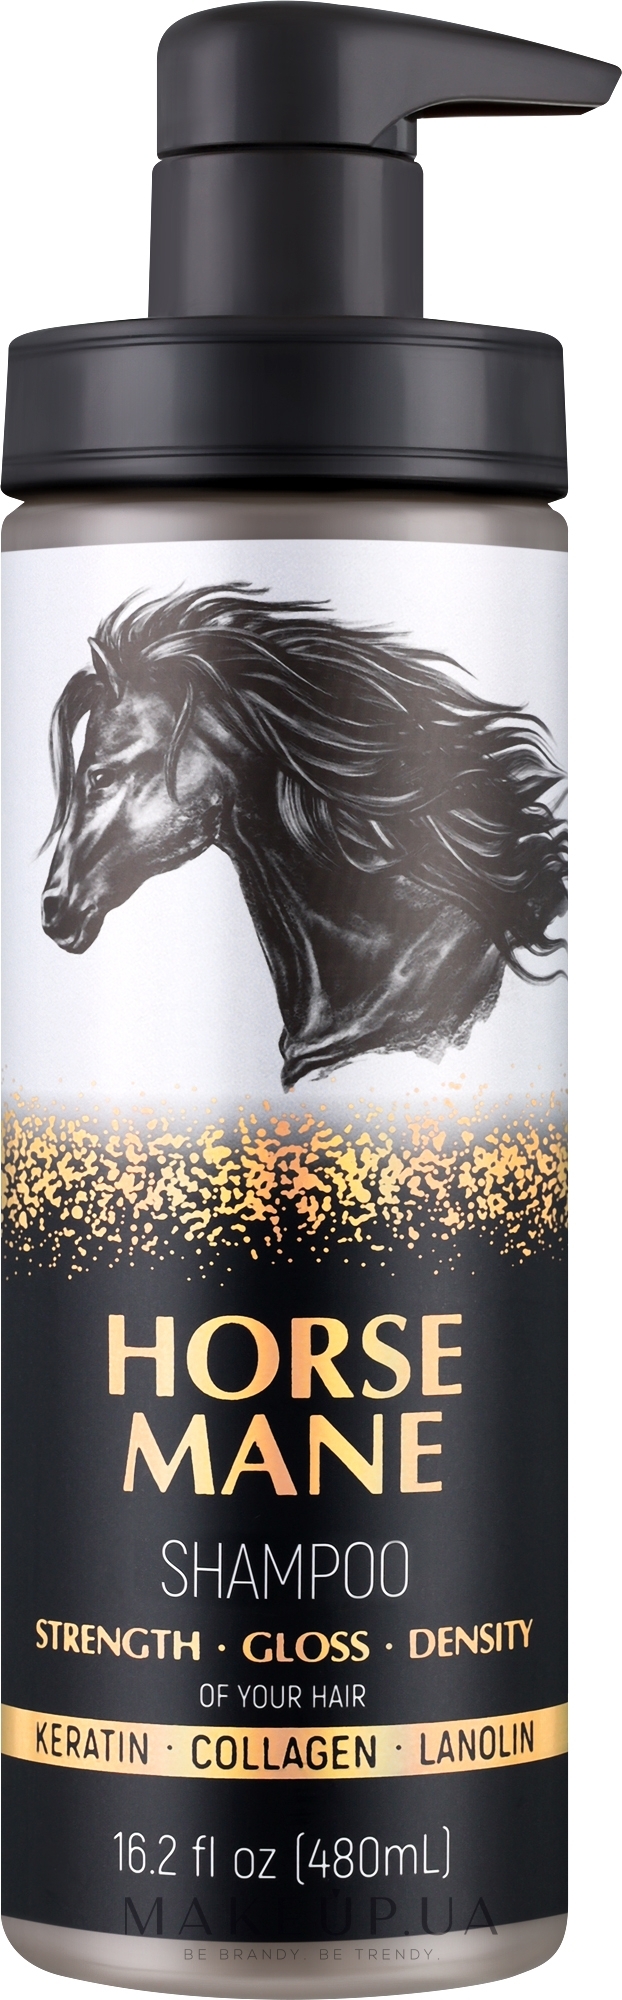 Шампунь для волосся - Horse Mane Strength Gloss Density Shampoo — фото 480ml